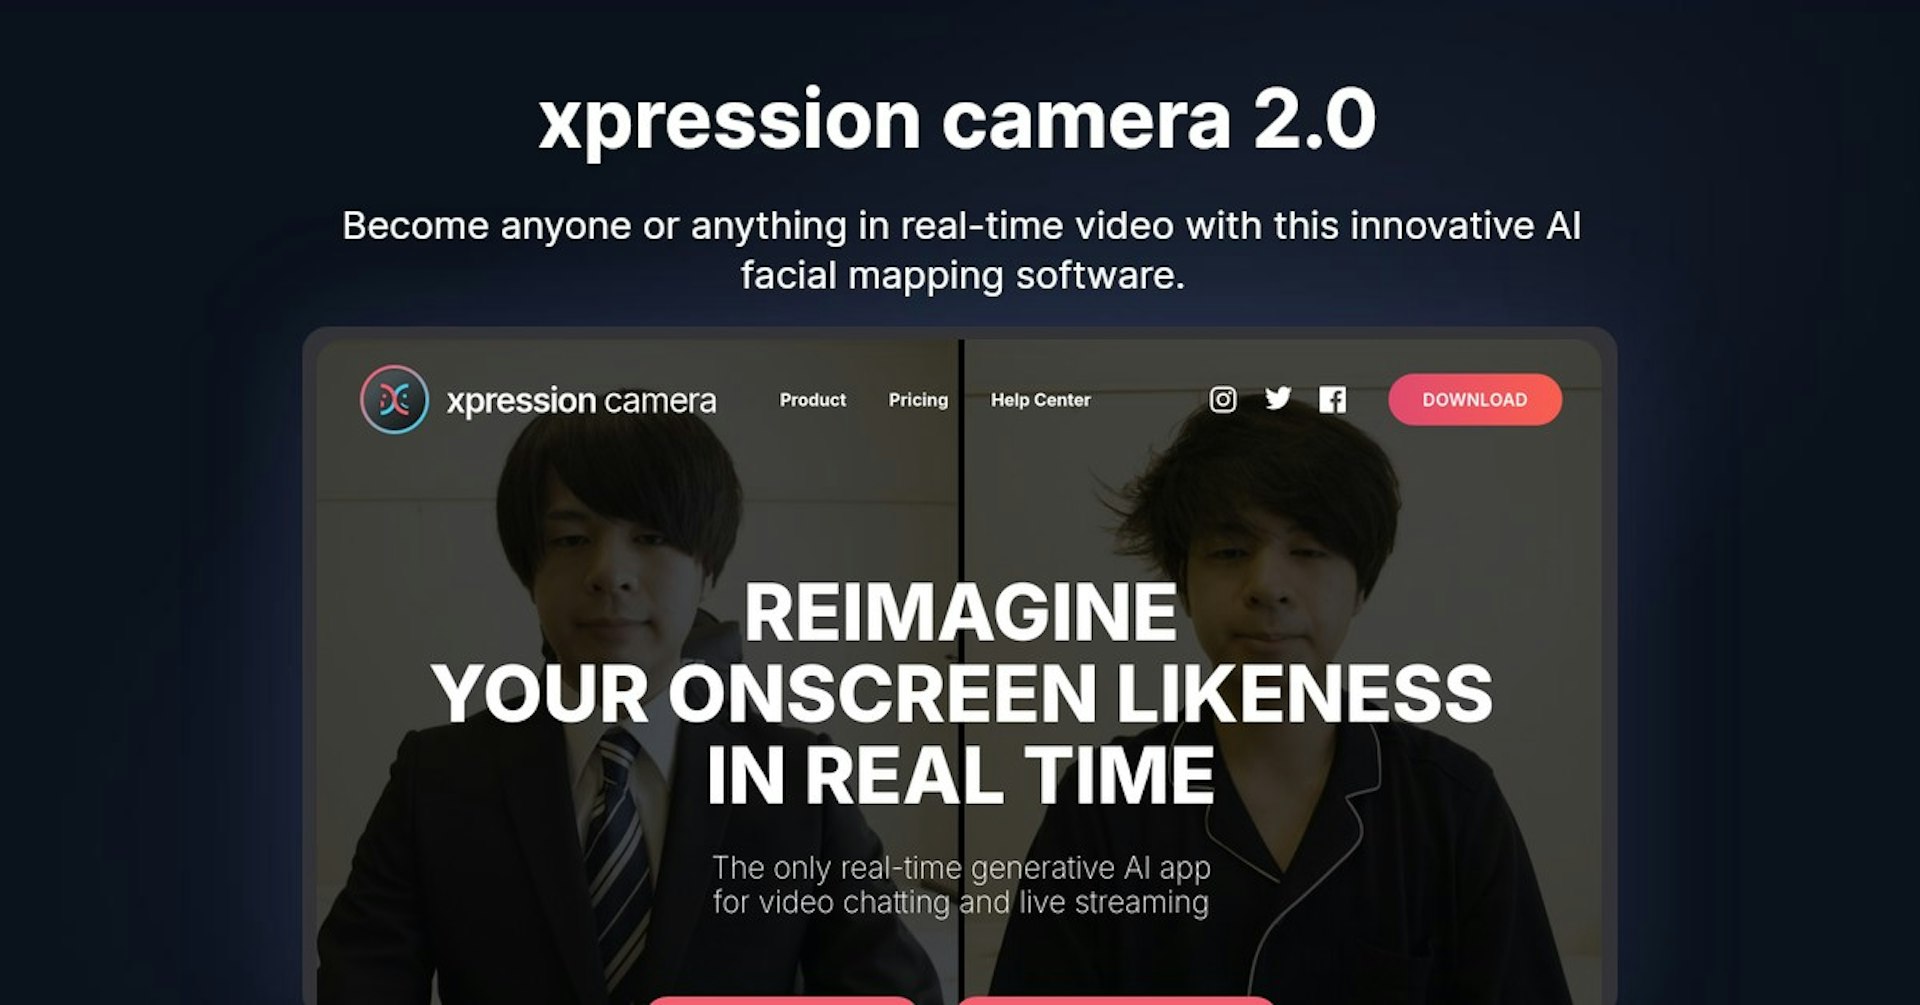 xpression camera 2.0